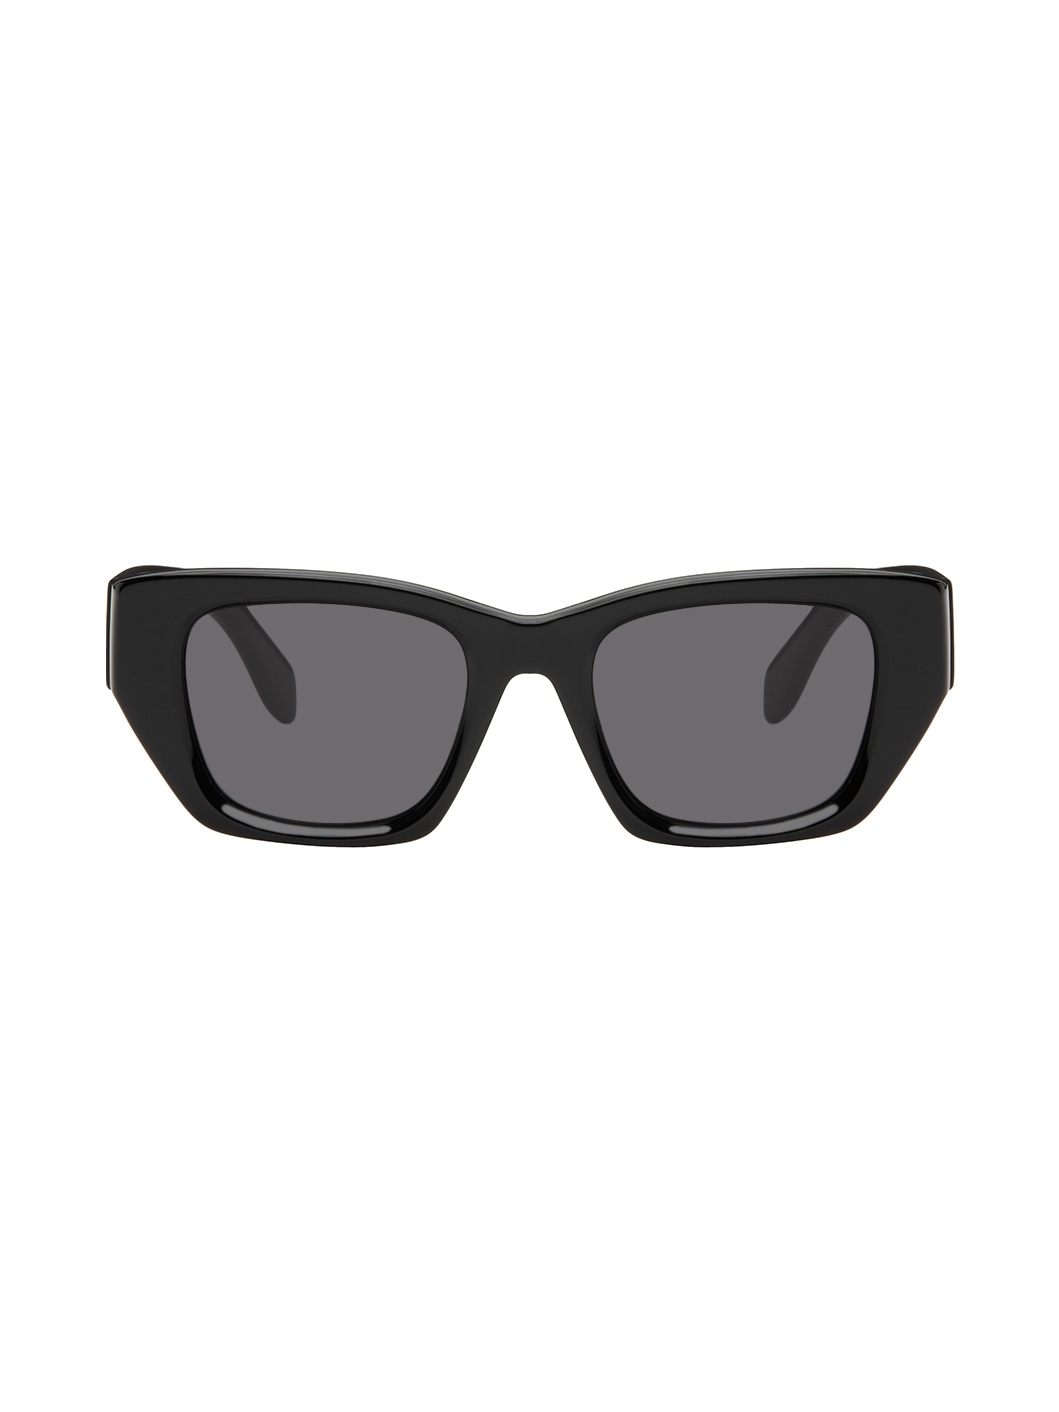 Black Hinkley Sunglasses - 1